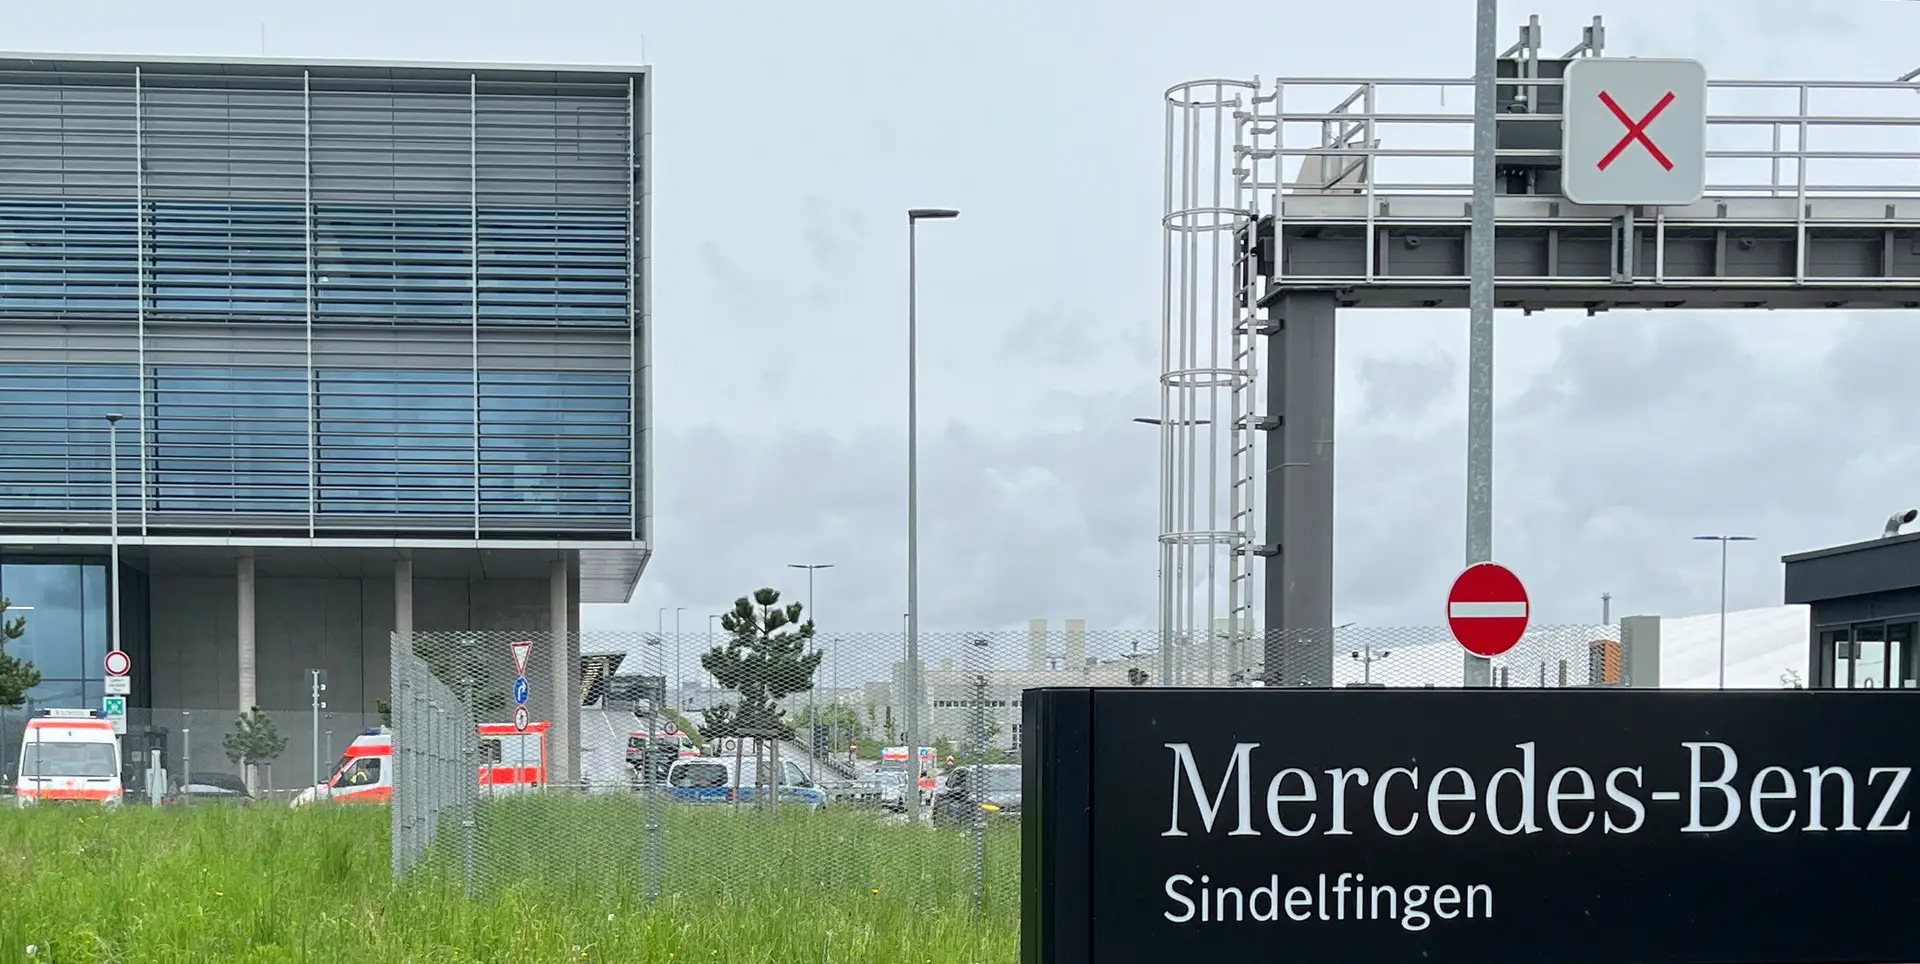 Pelo menos dois mortos em tiroteio numa fábrica da Mercedes na Alemanha